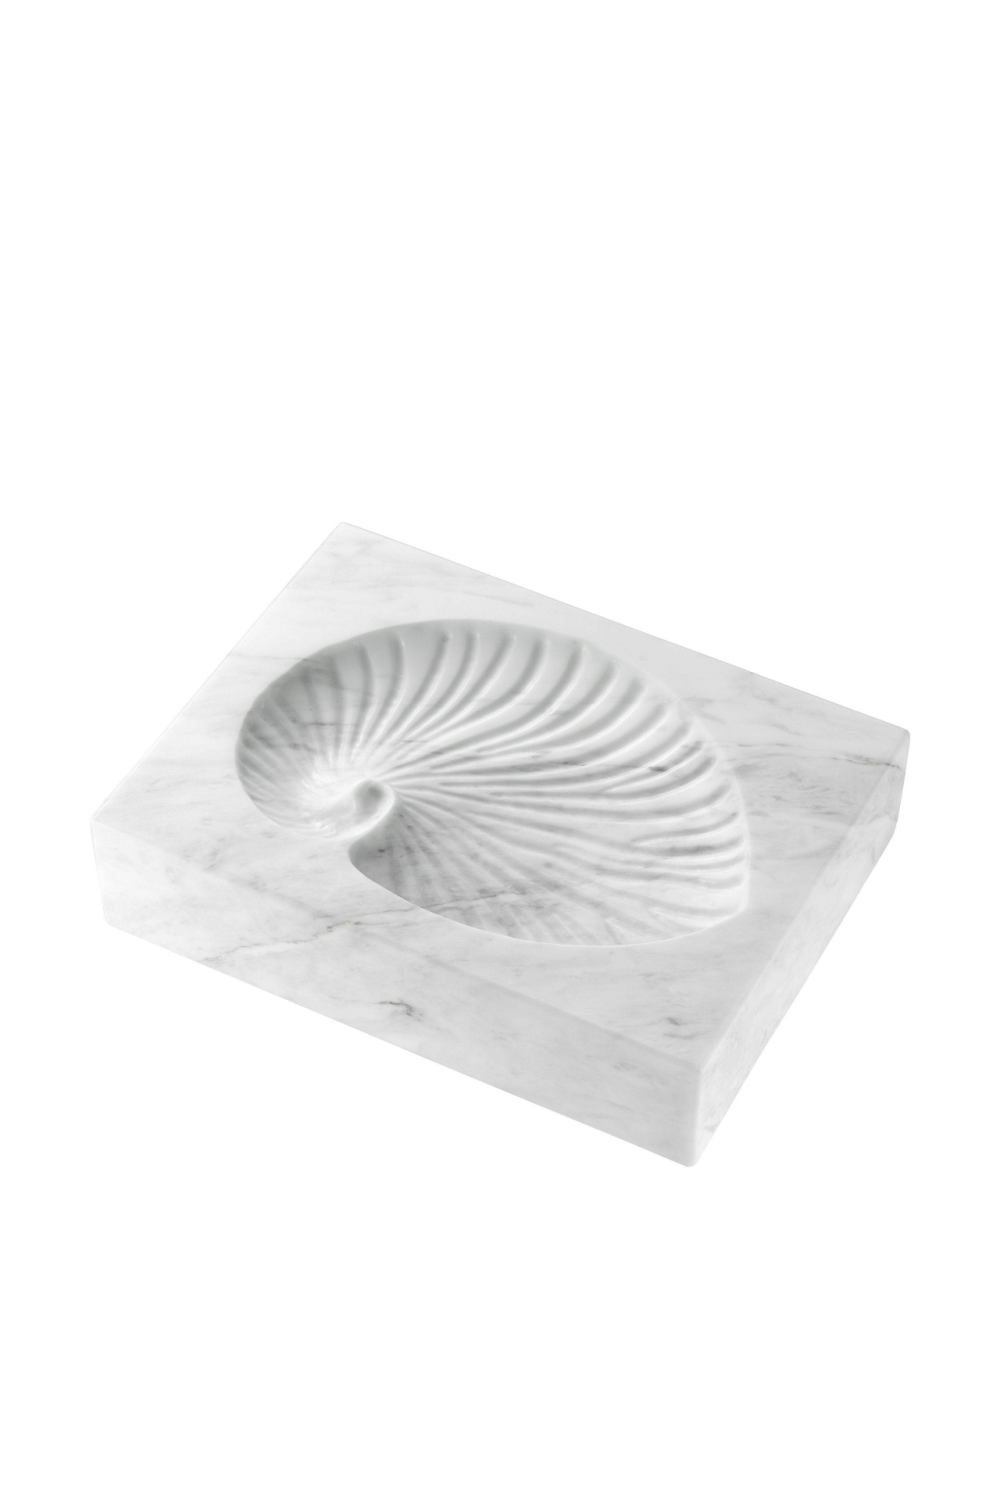 White Marble Shell Fossil | Eichholtz Conchiglia | OROA